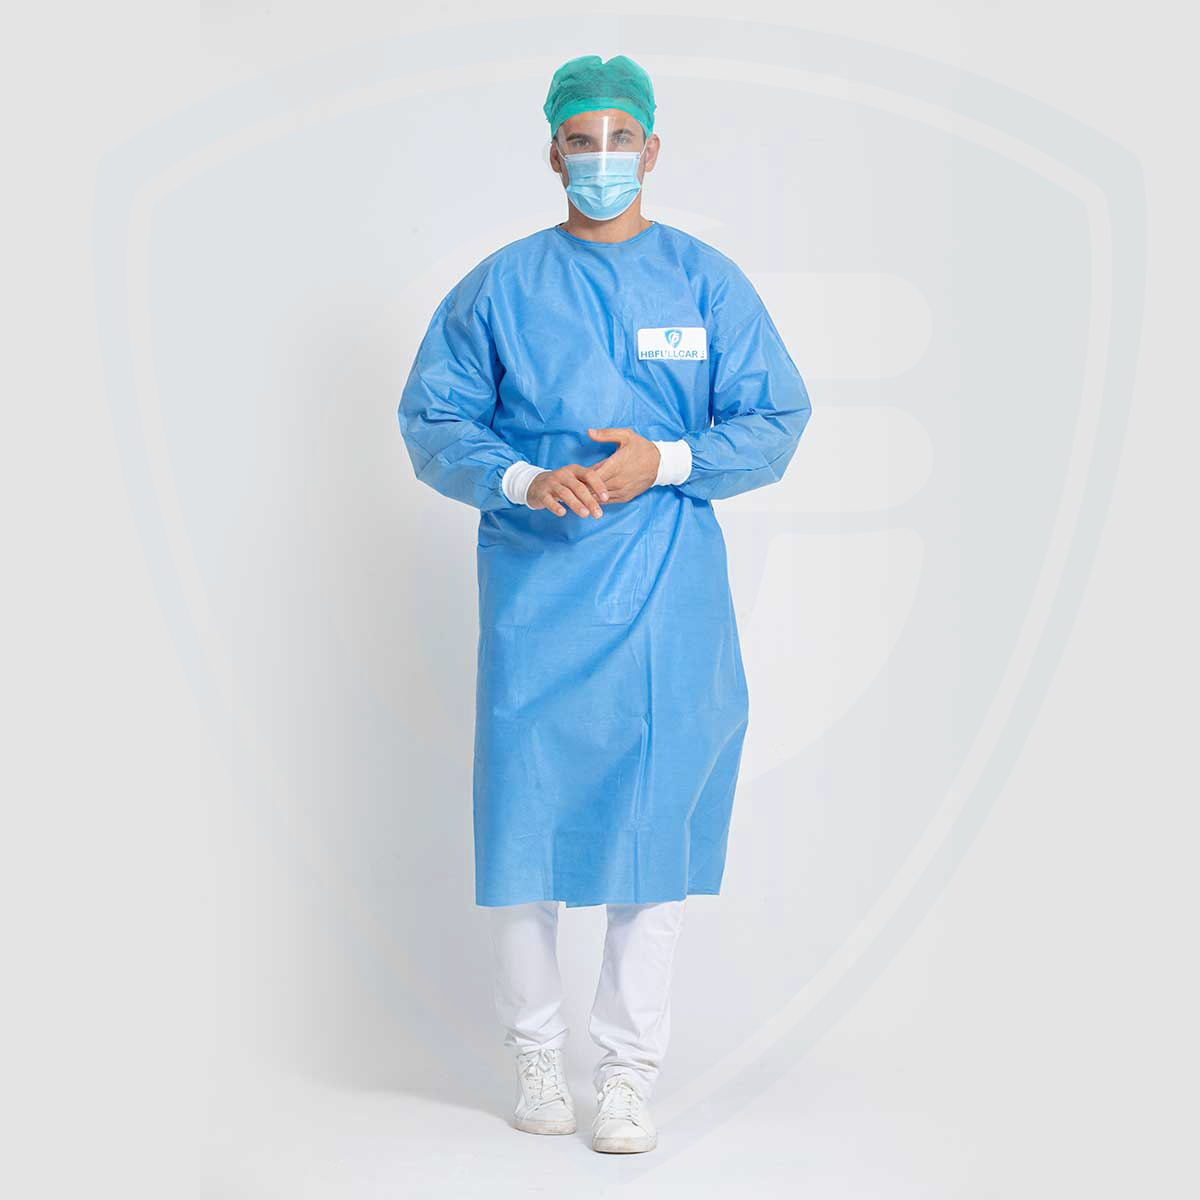 Robe chirurgicale jetable imperméable autoclavable bleue pour l'hôpital/cliniques AAMI PB70 Level3